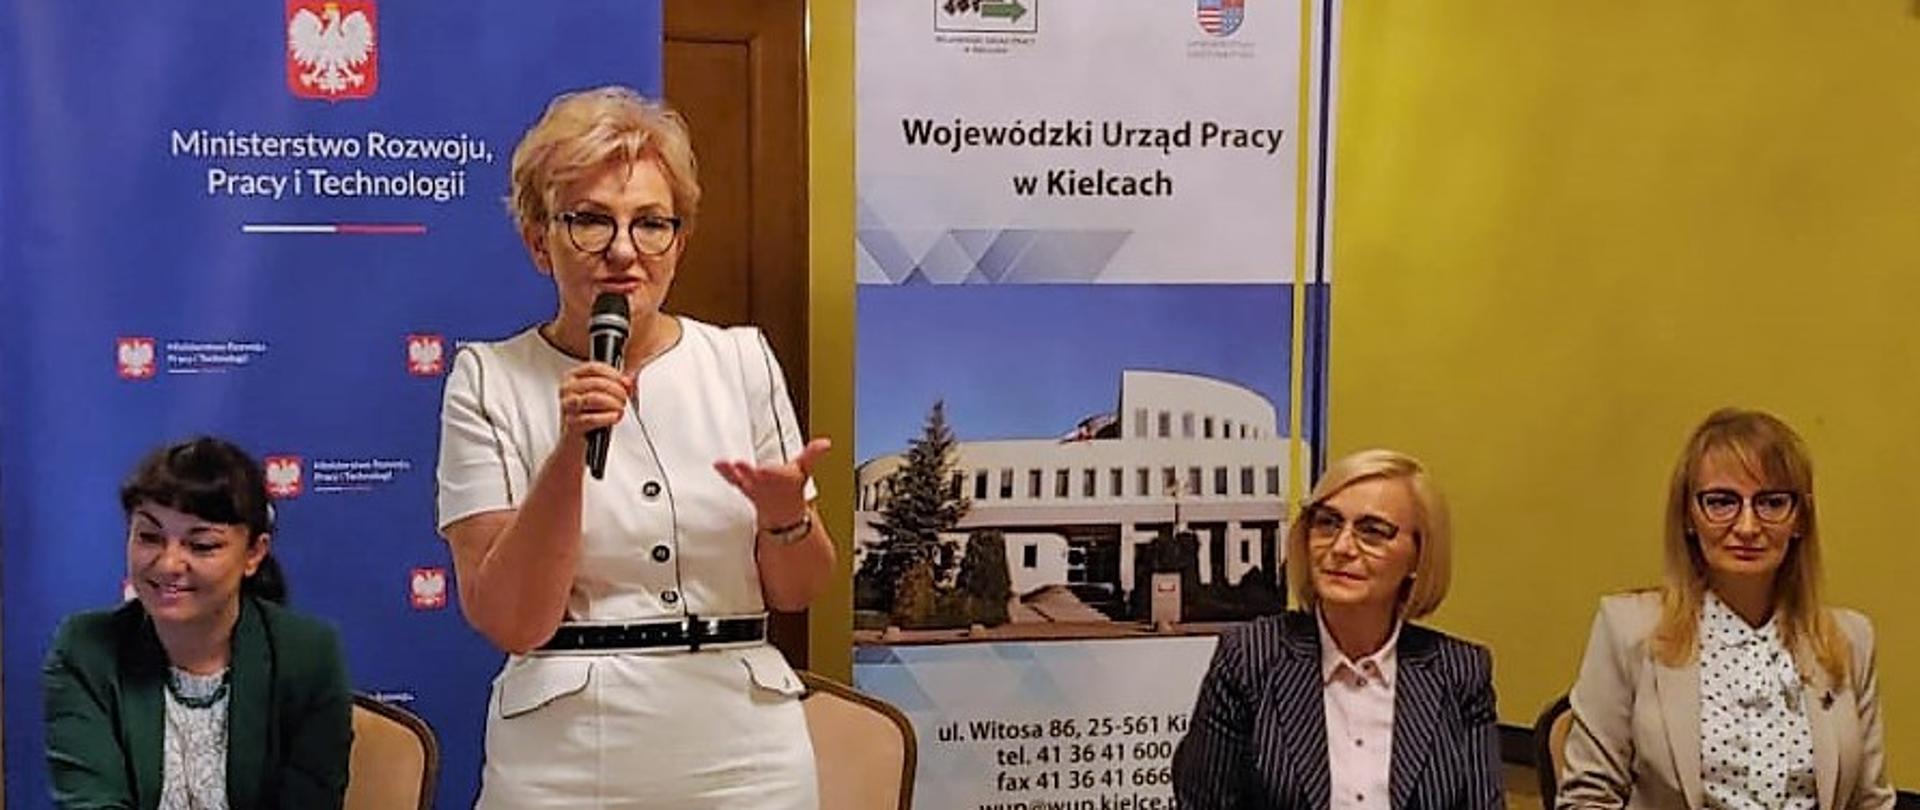 Sekretarz Stanu w MRPiT Iwona Michałek spotkała się dzisiaj z przedstawicielami powiatowych urzędów pracy z woj. świętokrzyskiego.